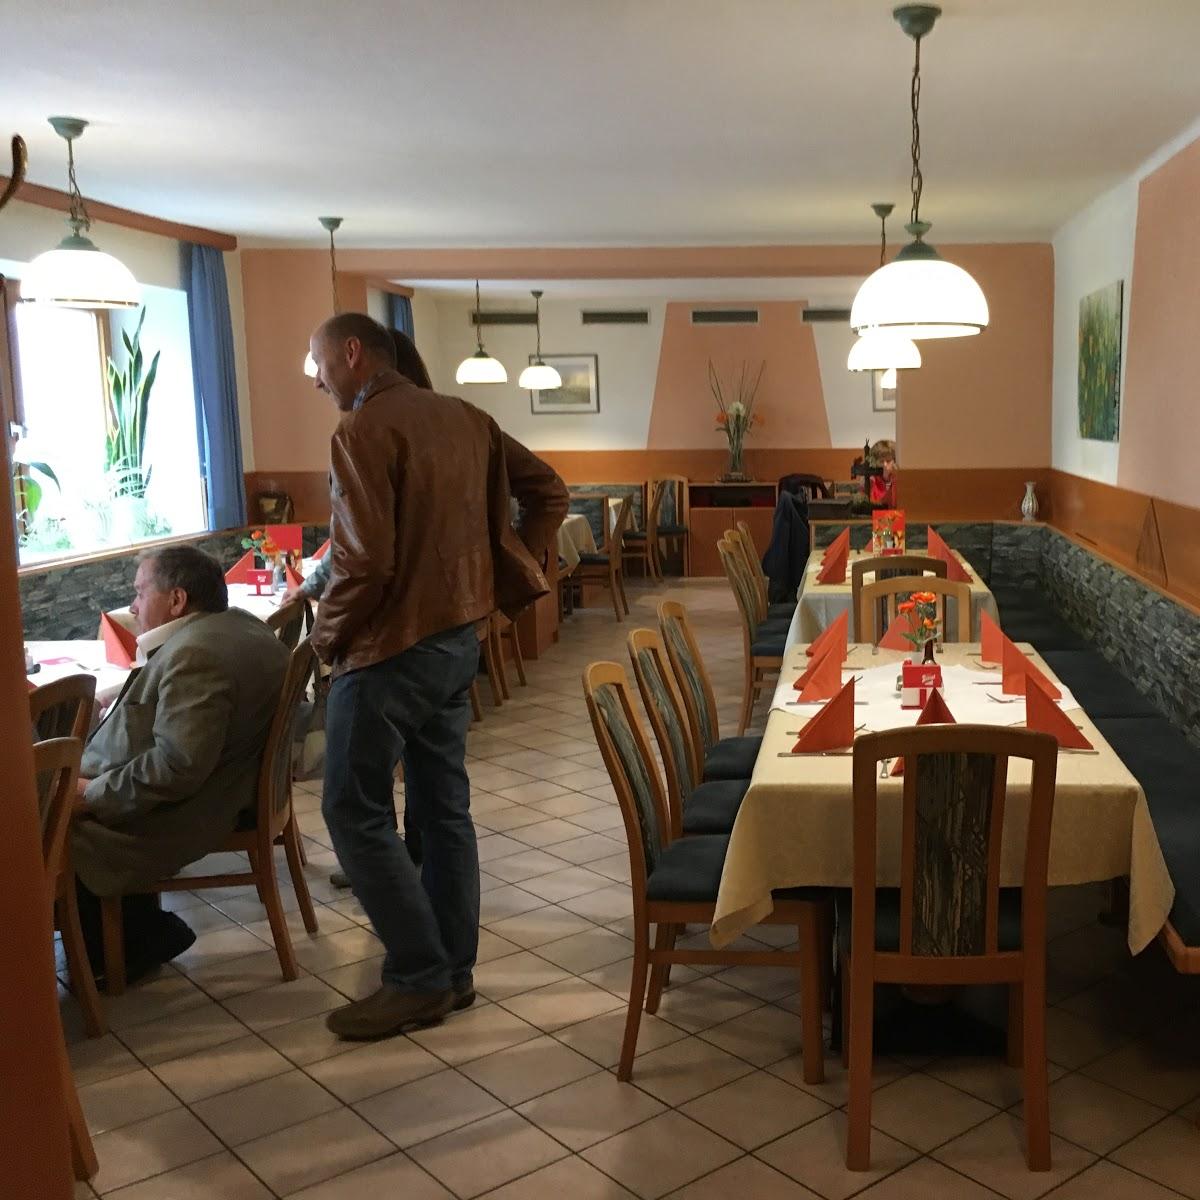 Restaurant "Friedrich Bachleitner" in Scharten